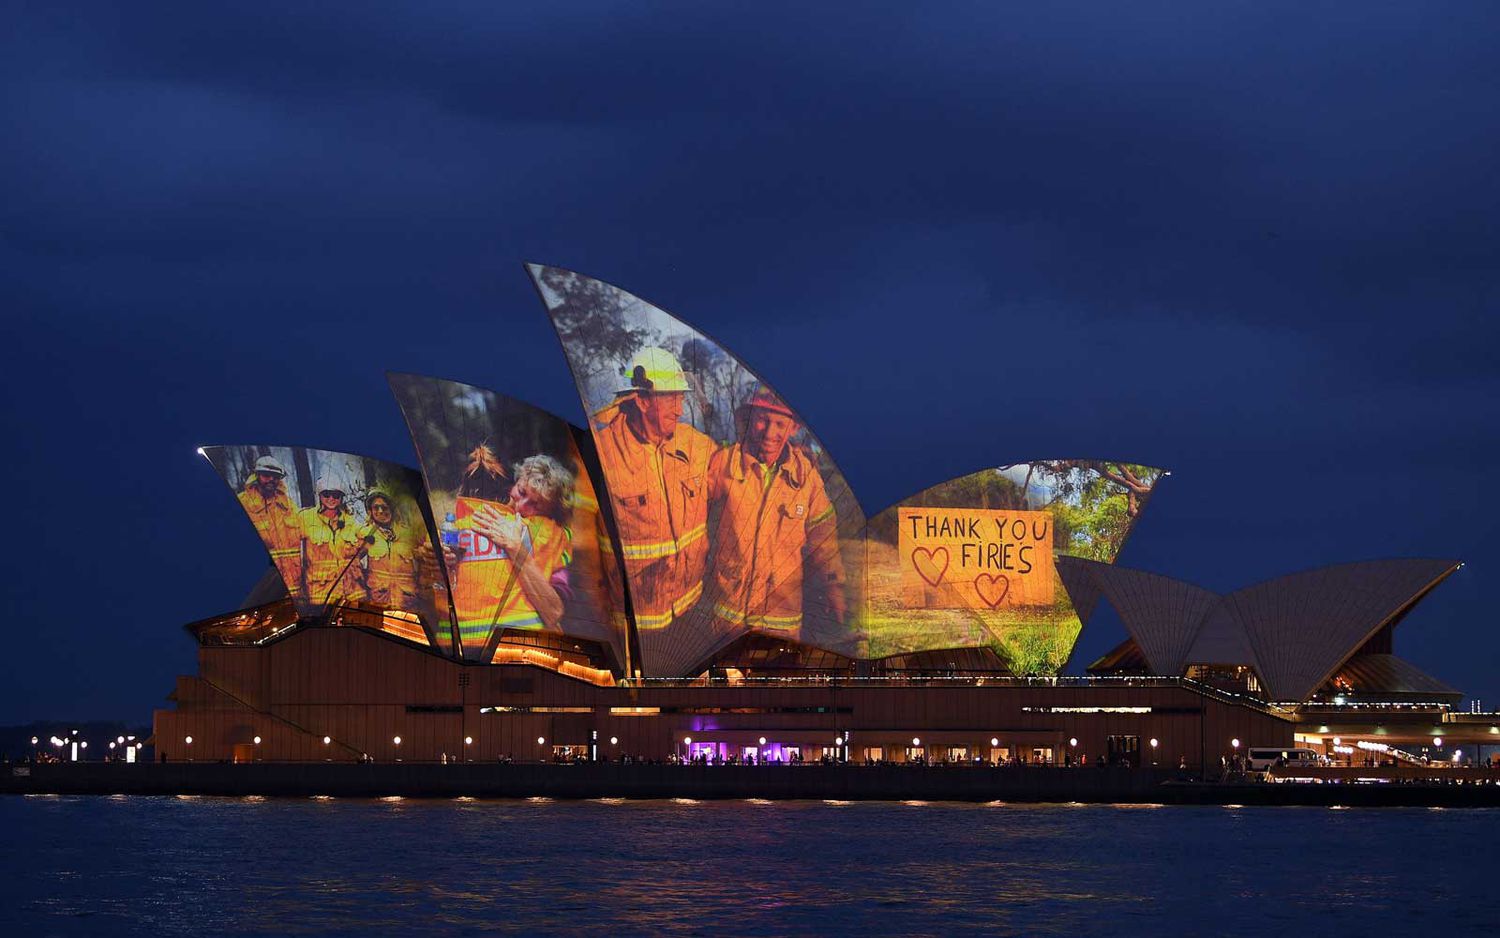 Les voiles de l'Opéra sont allumées avec une série d'images pour montrer le soutien aux communautés touchées par les feux de brousse et exprimer la gratitude aux services d'urgence et aux bénévoles à Sydney le 11 janvier 2020